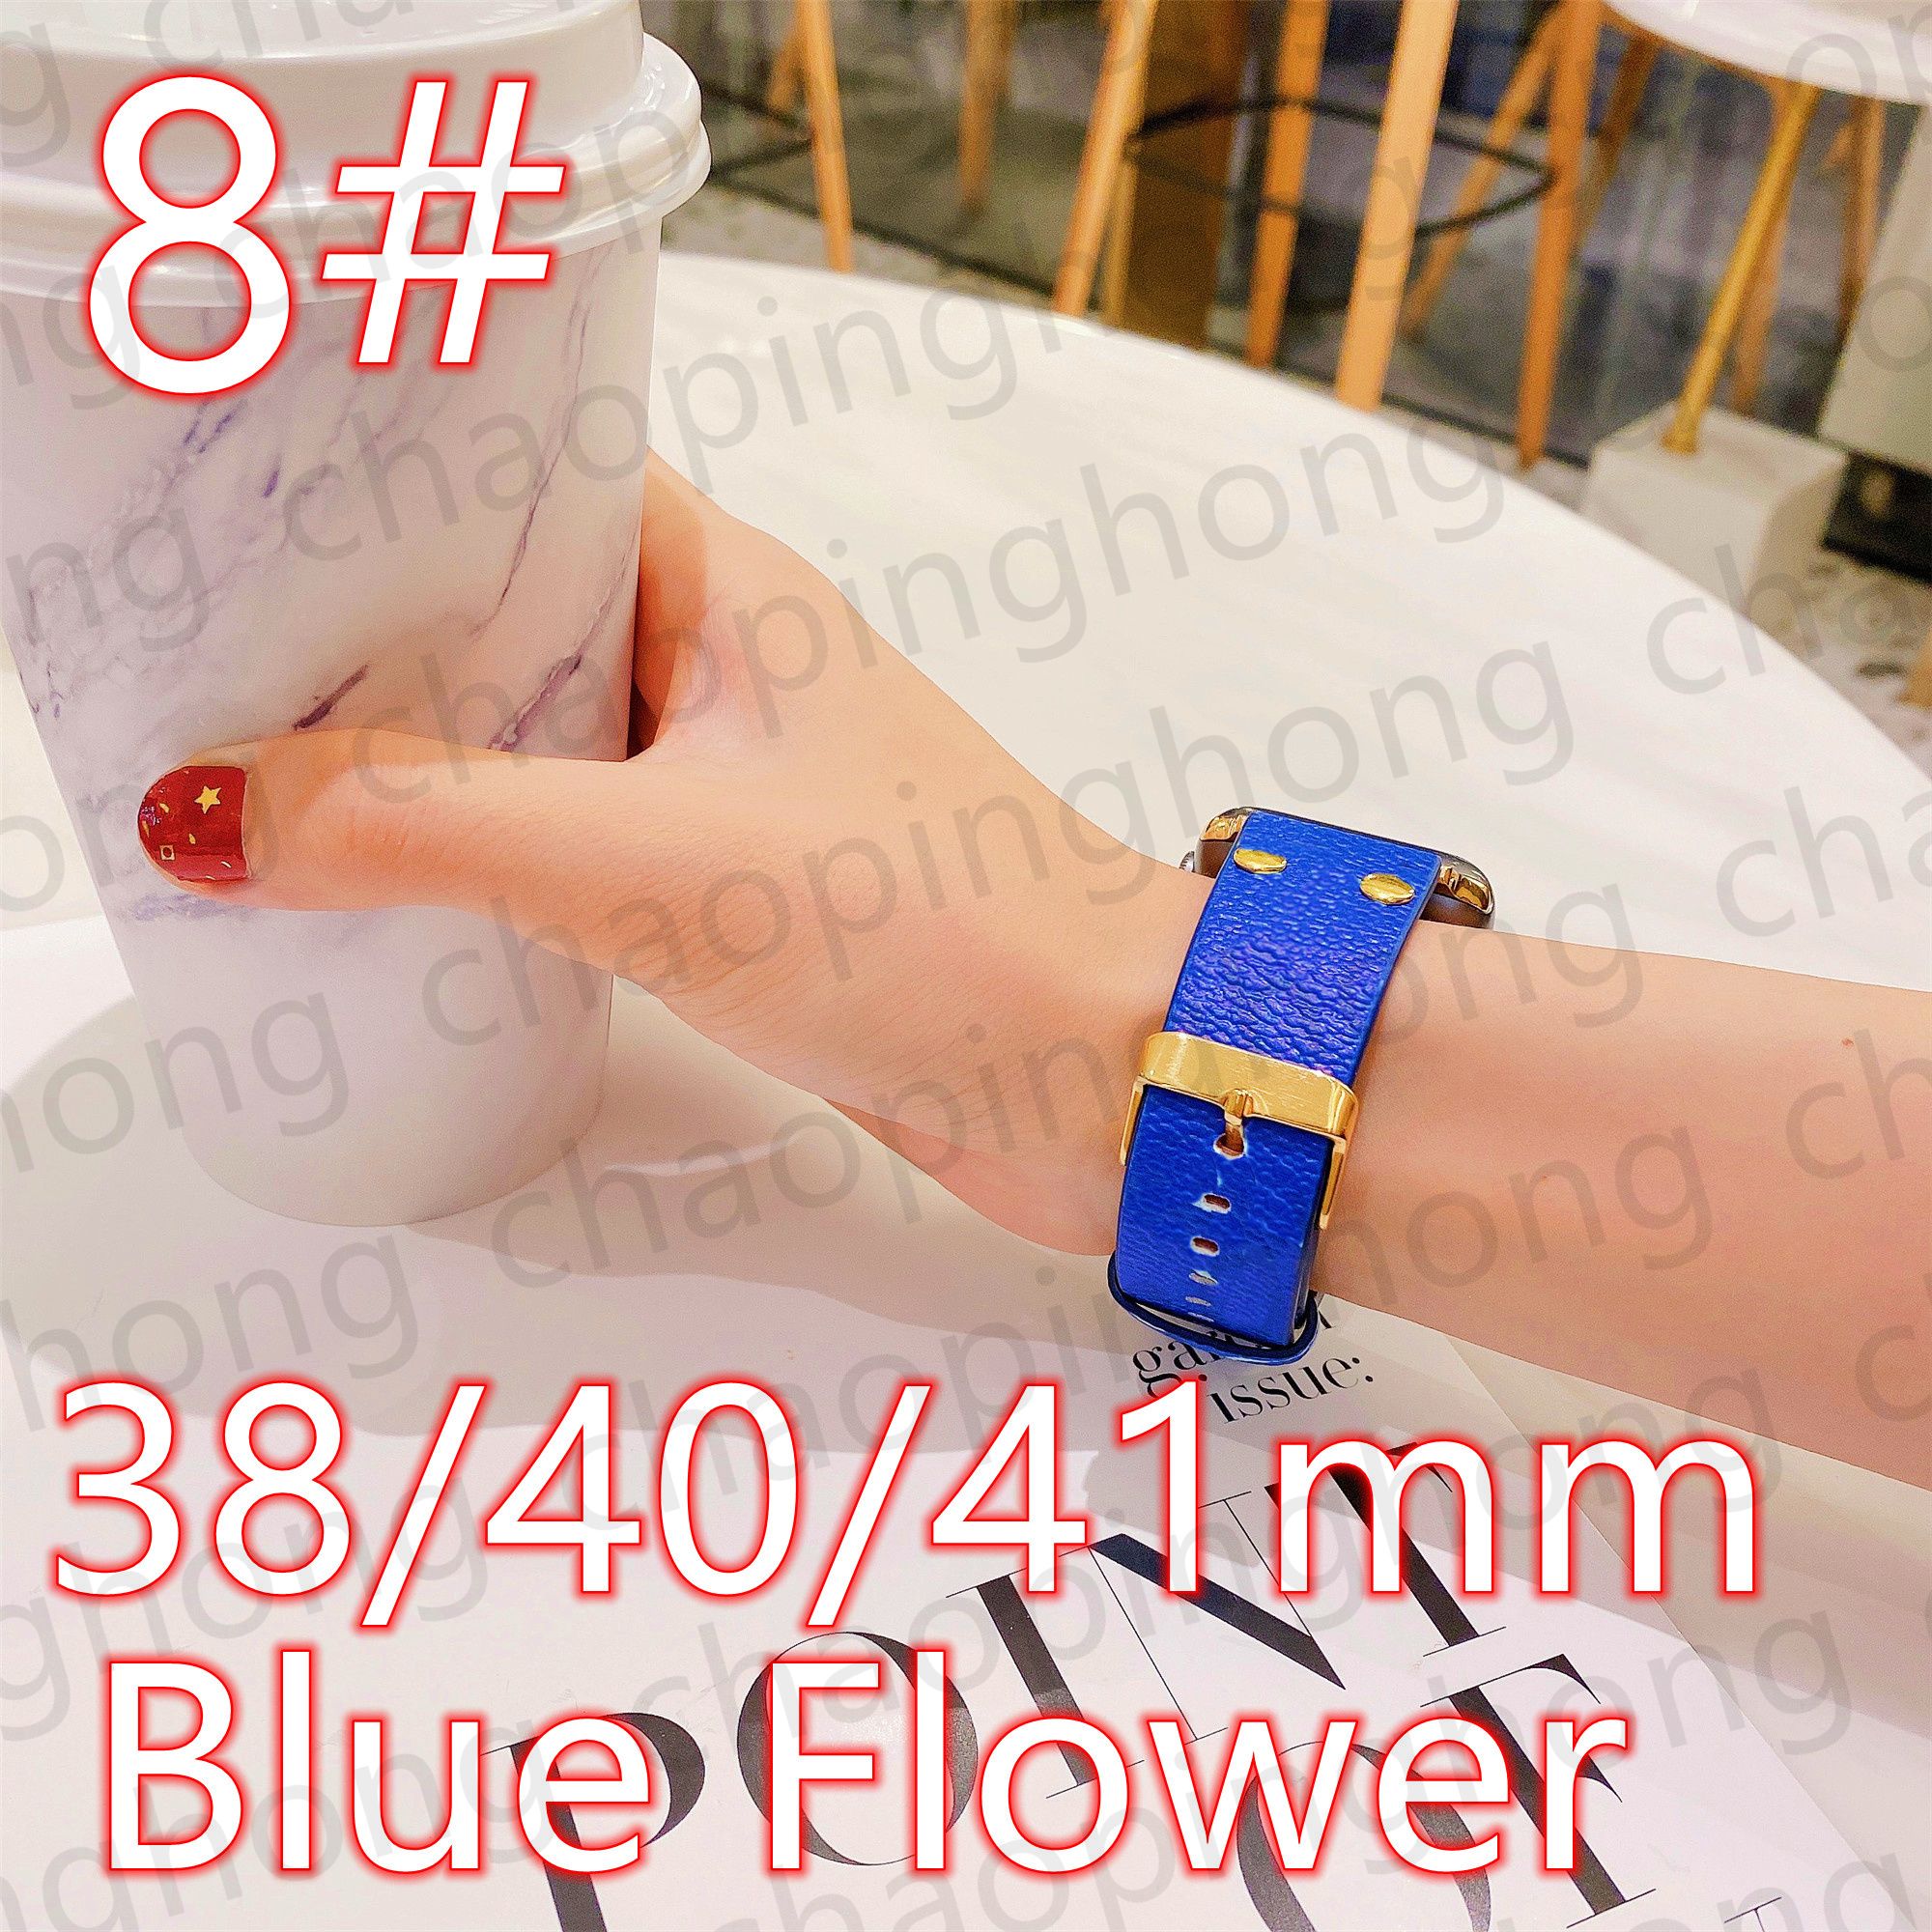 8 # 38/40/41mm Blue Flower V logo